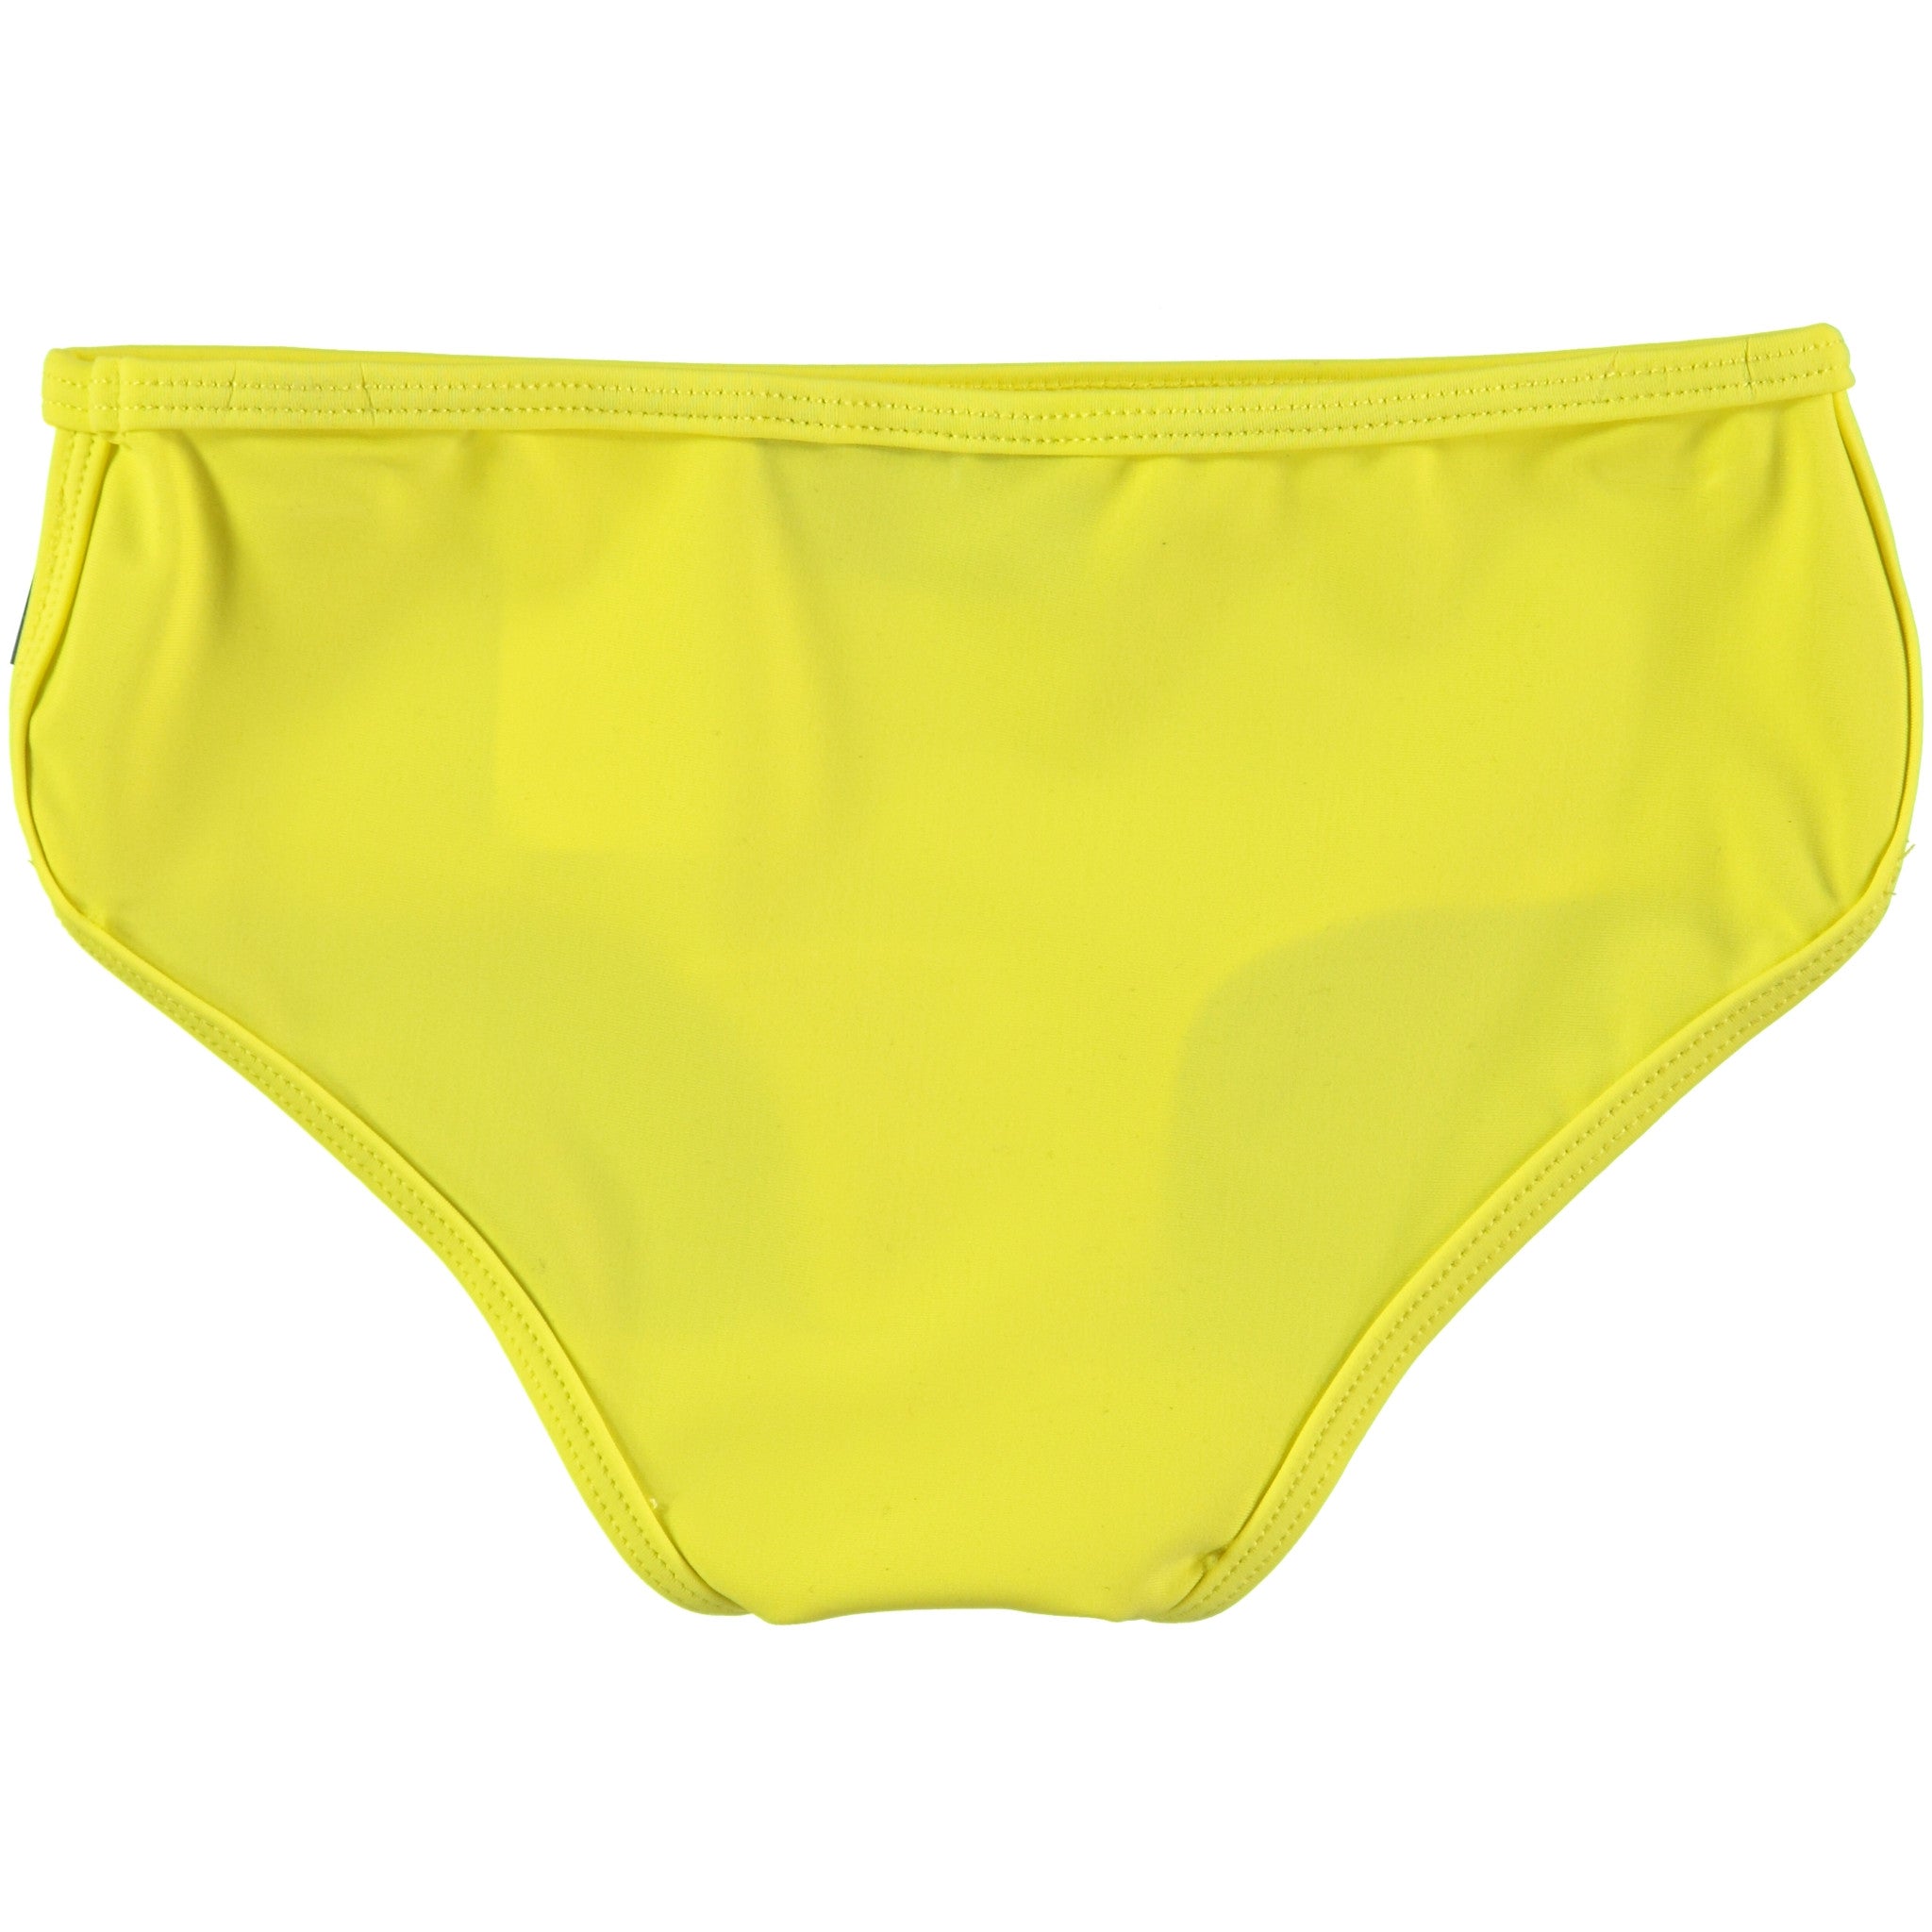 Molo Lemon Bikini Bottom